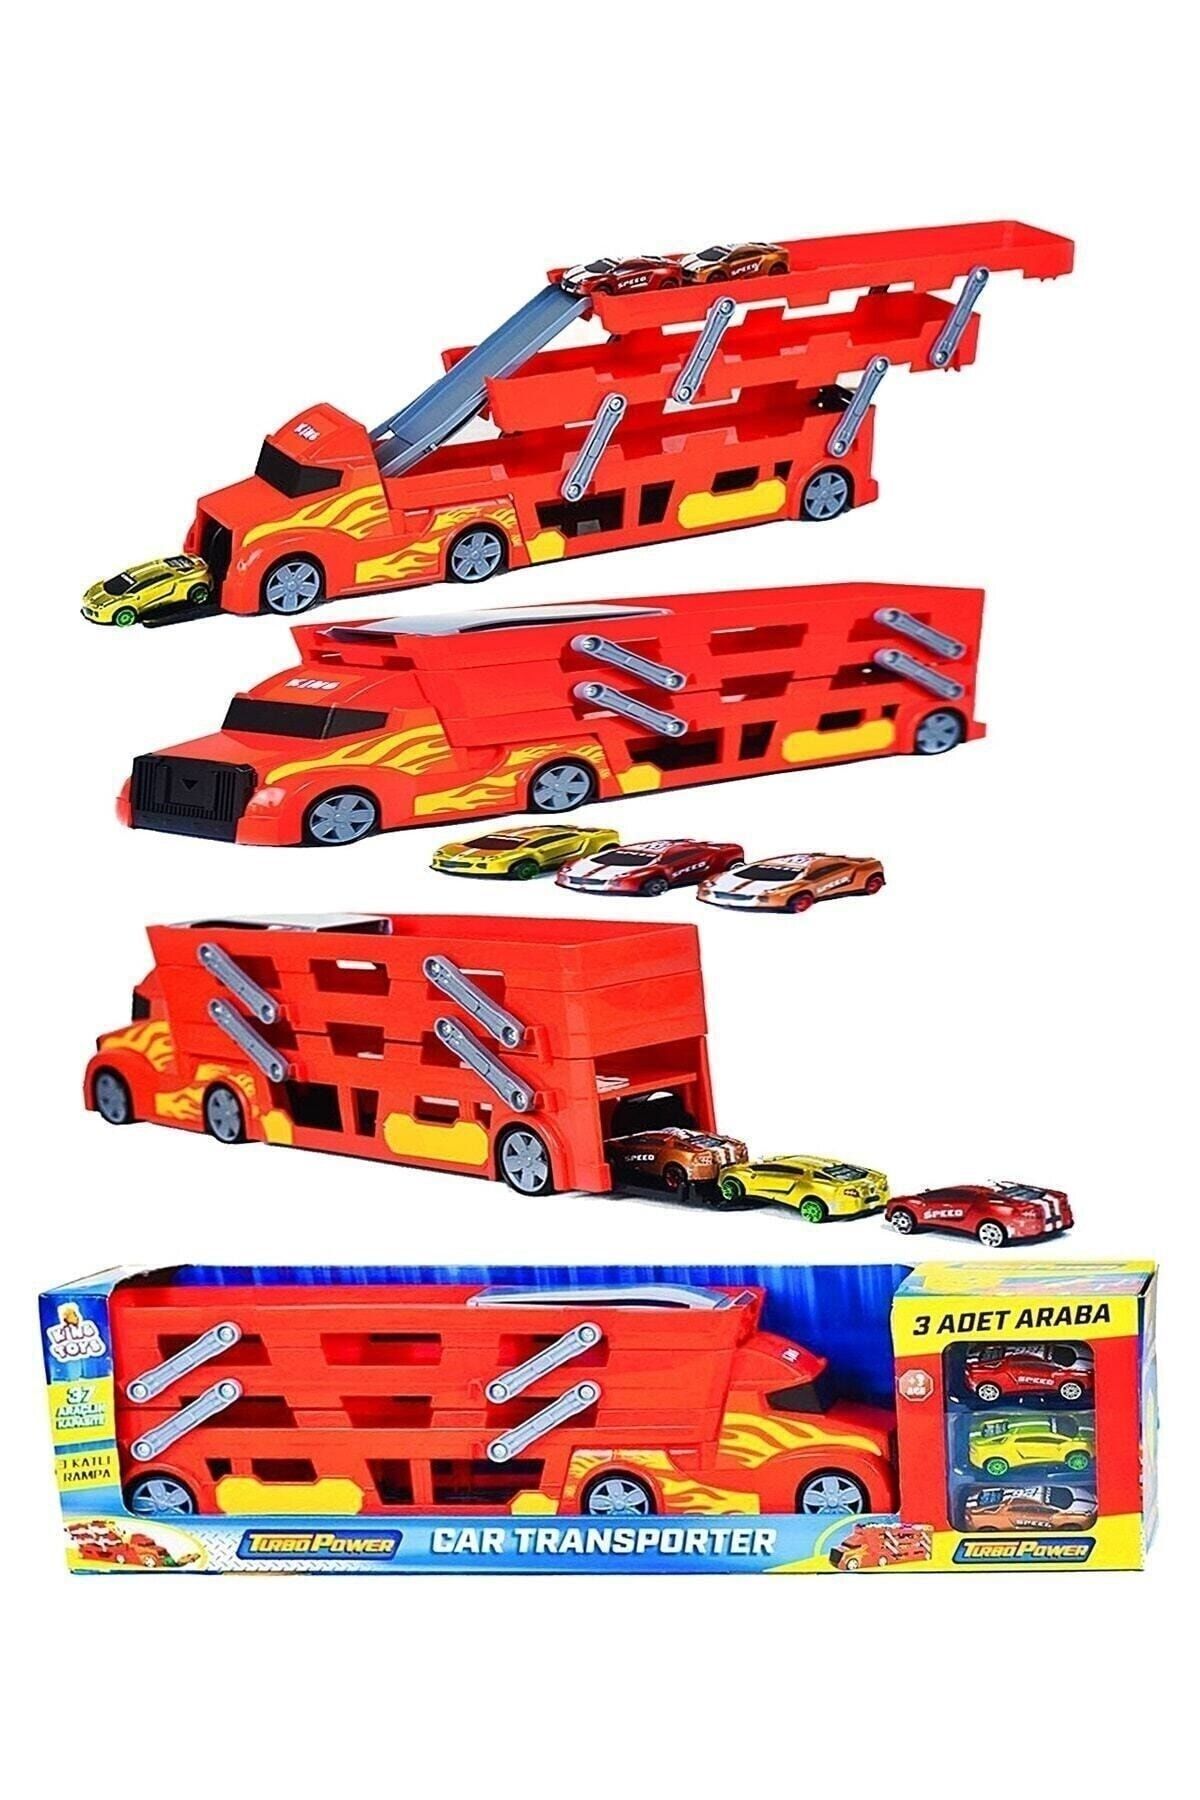 King Toys 3 Katlı Araç Taşıyıcı Tır - Araba Fırlatıcı Cars Transporter Tır Oyun Seti